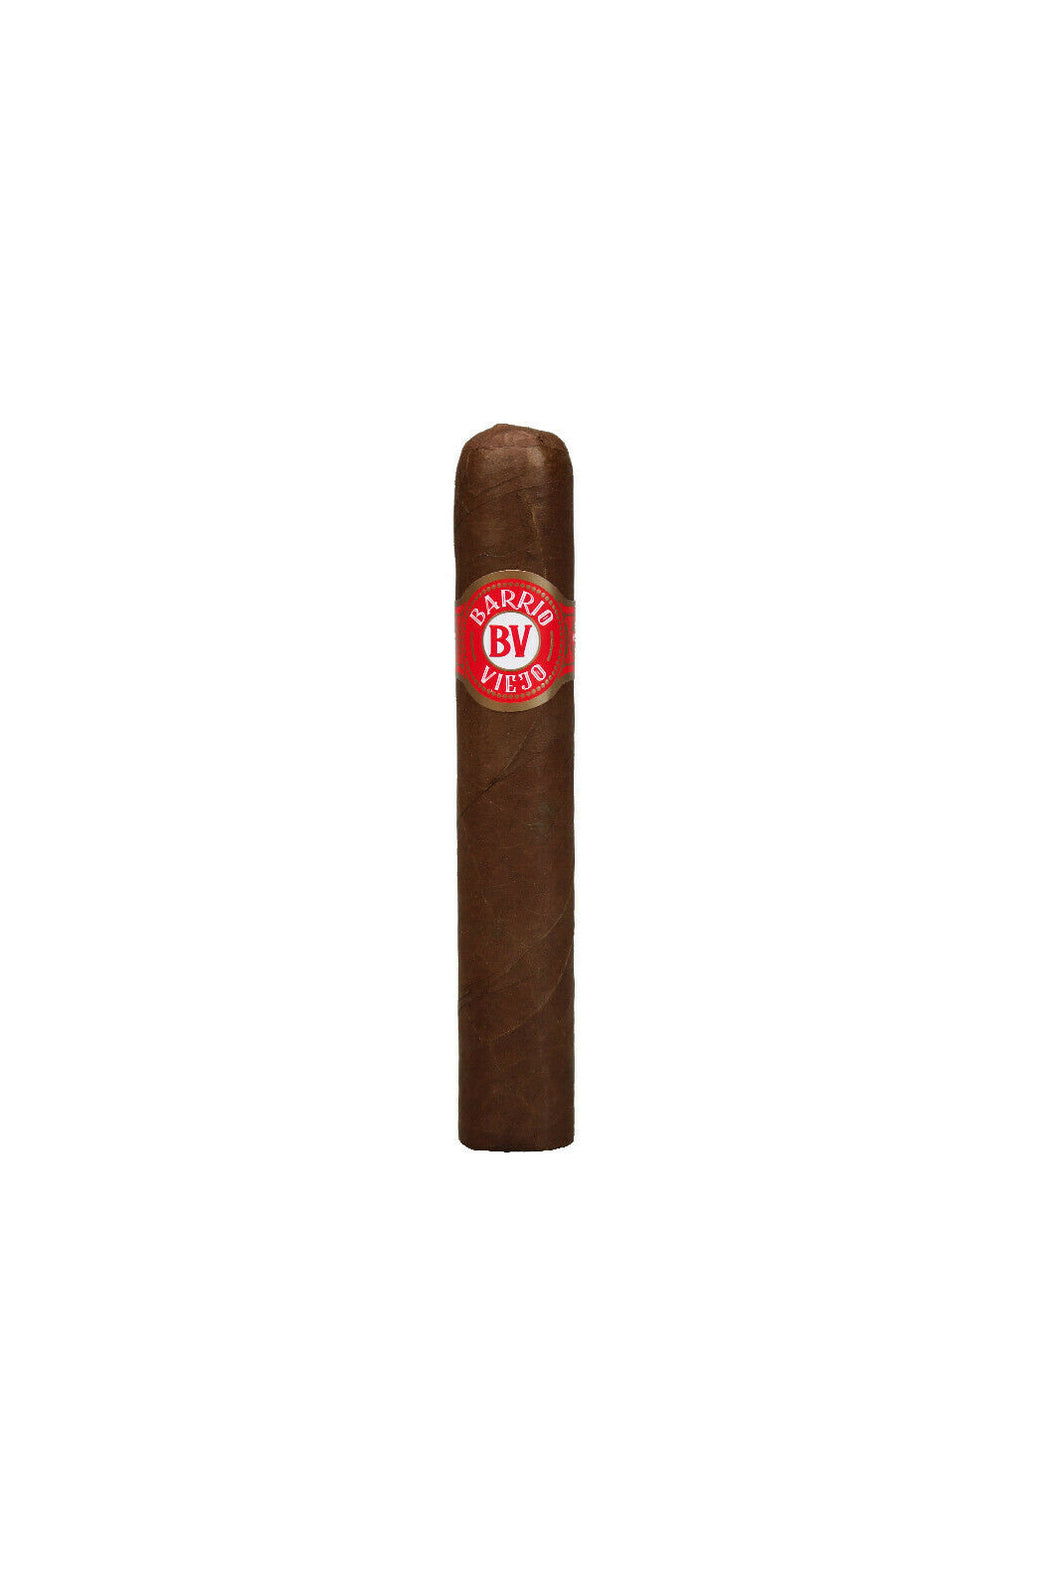 Barrio Viejo - Zigarren - Robusto - Honduras: wählen Sie: 5 oder 10 Stück